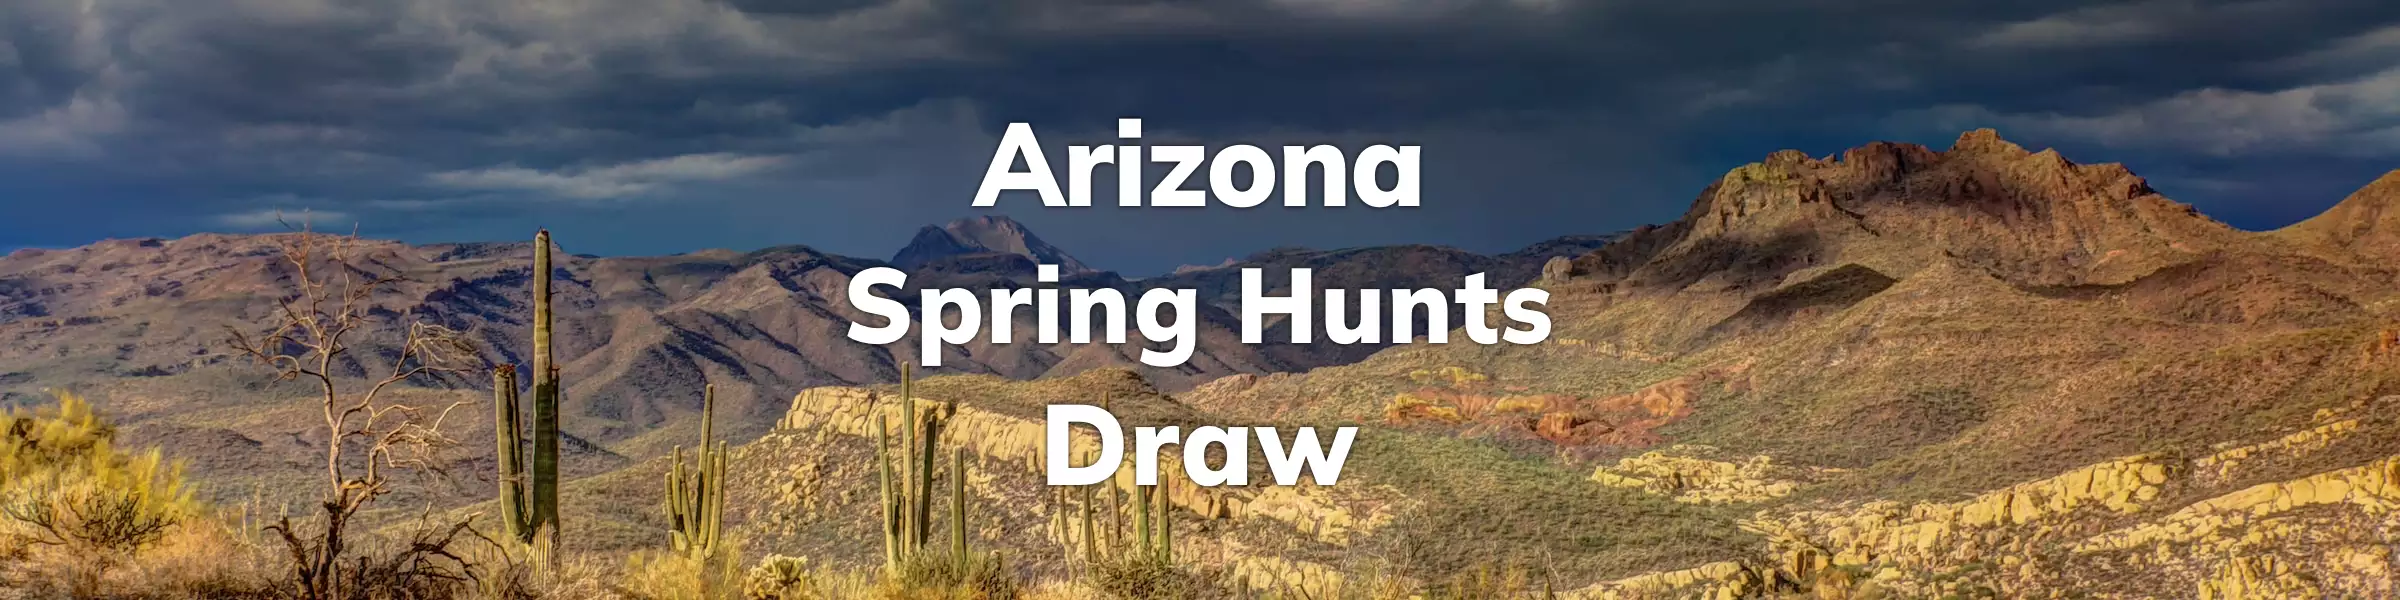 Arizona Spring Hunts Draw